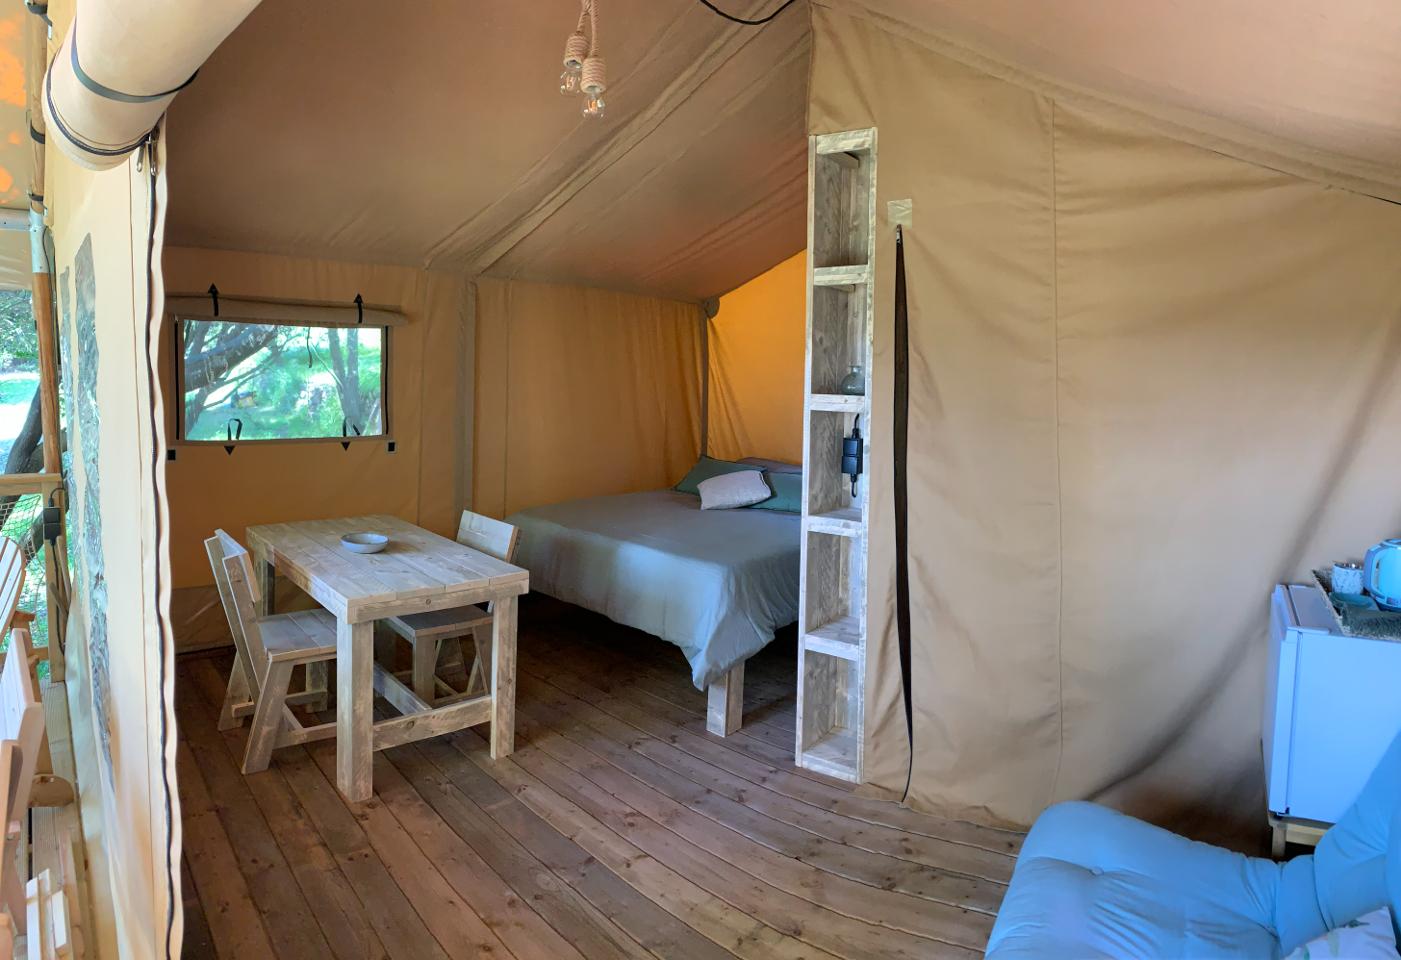 Logement GreenGo: La tente lodge sous les bois - Image 3